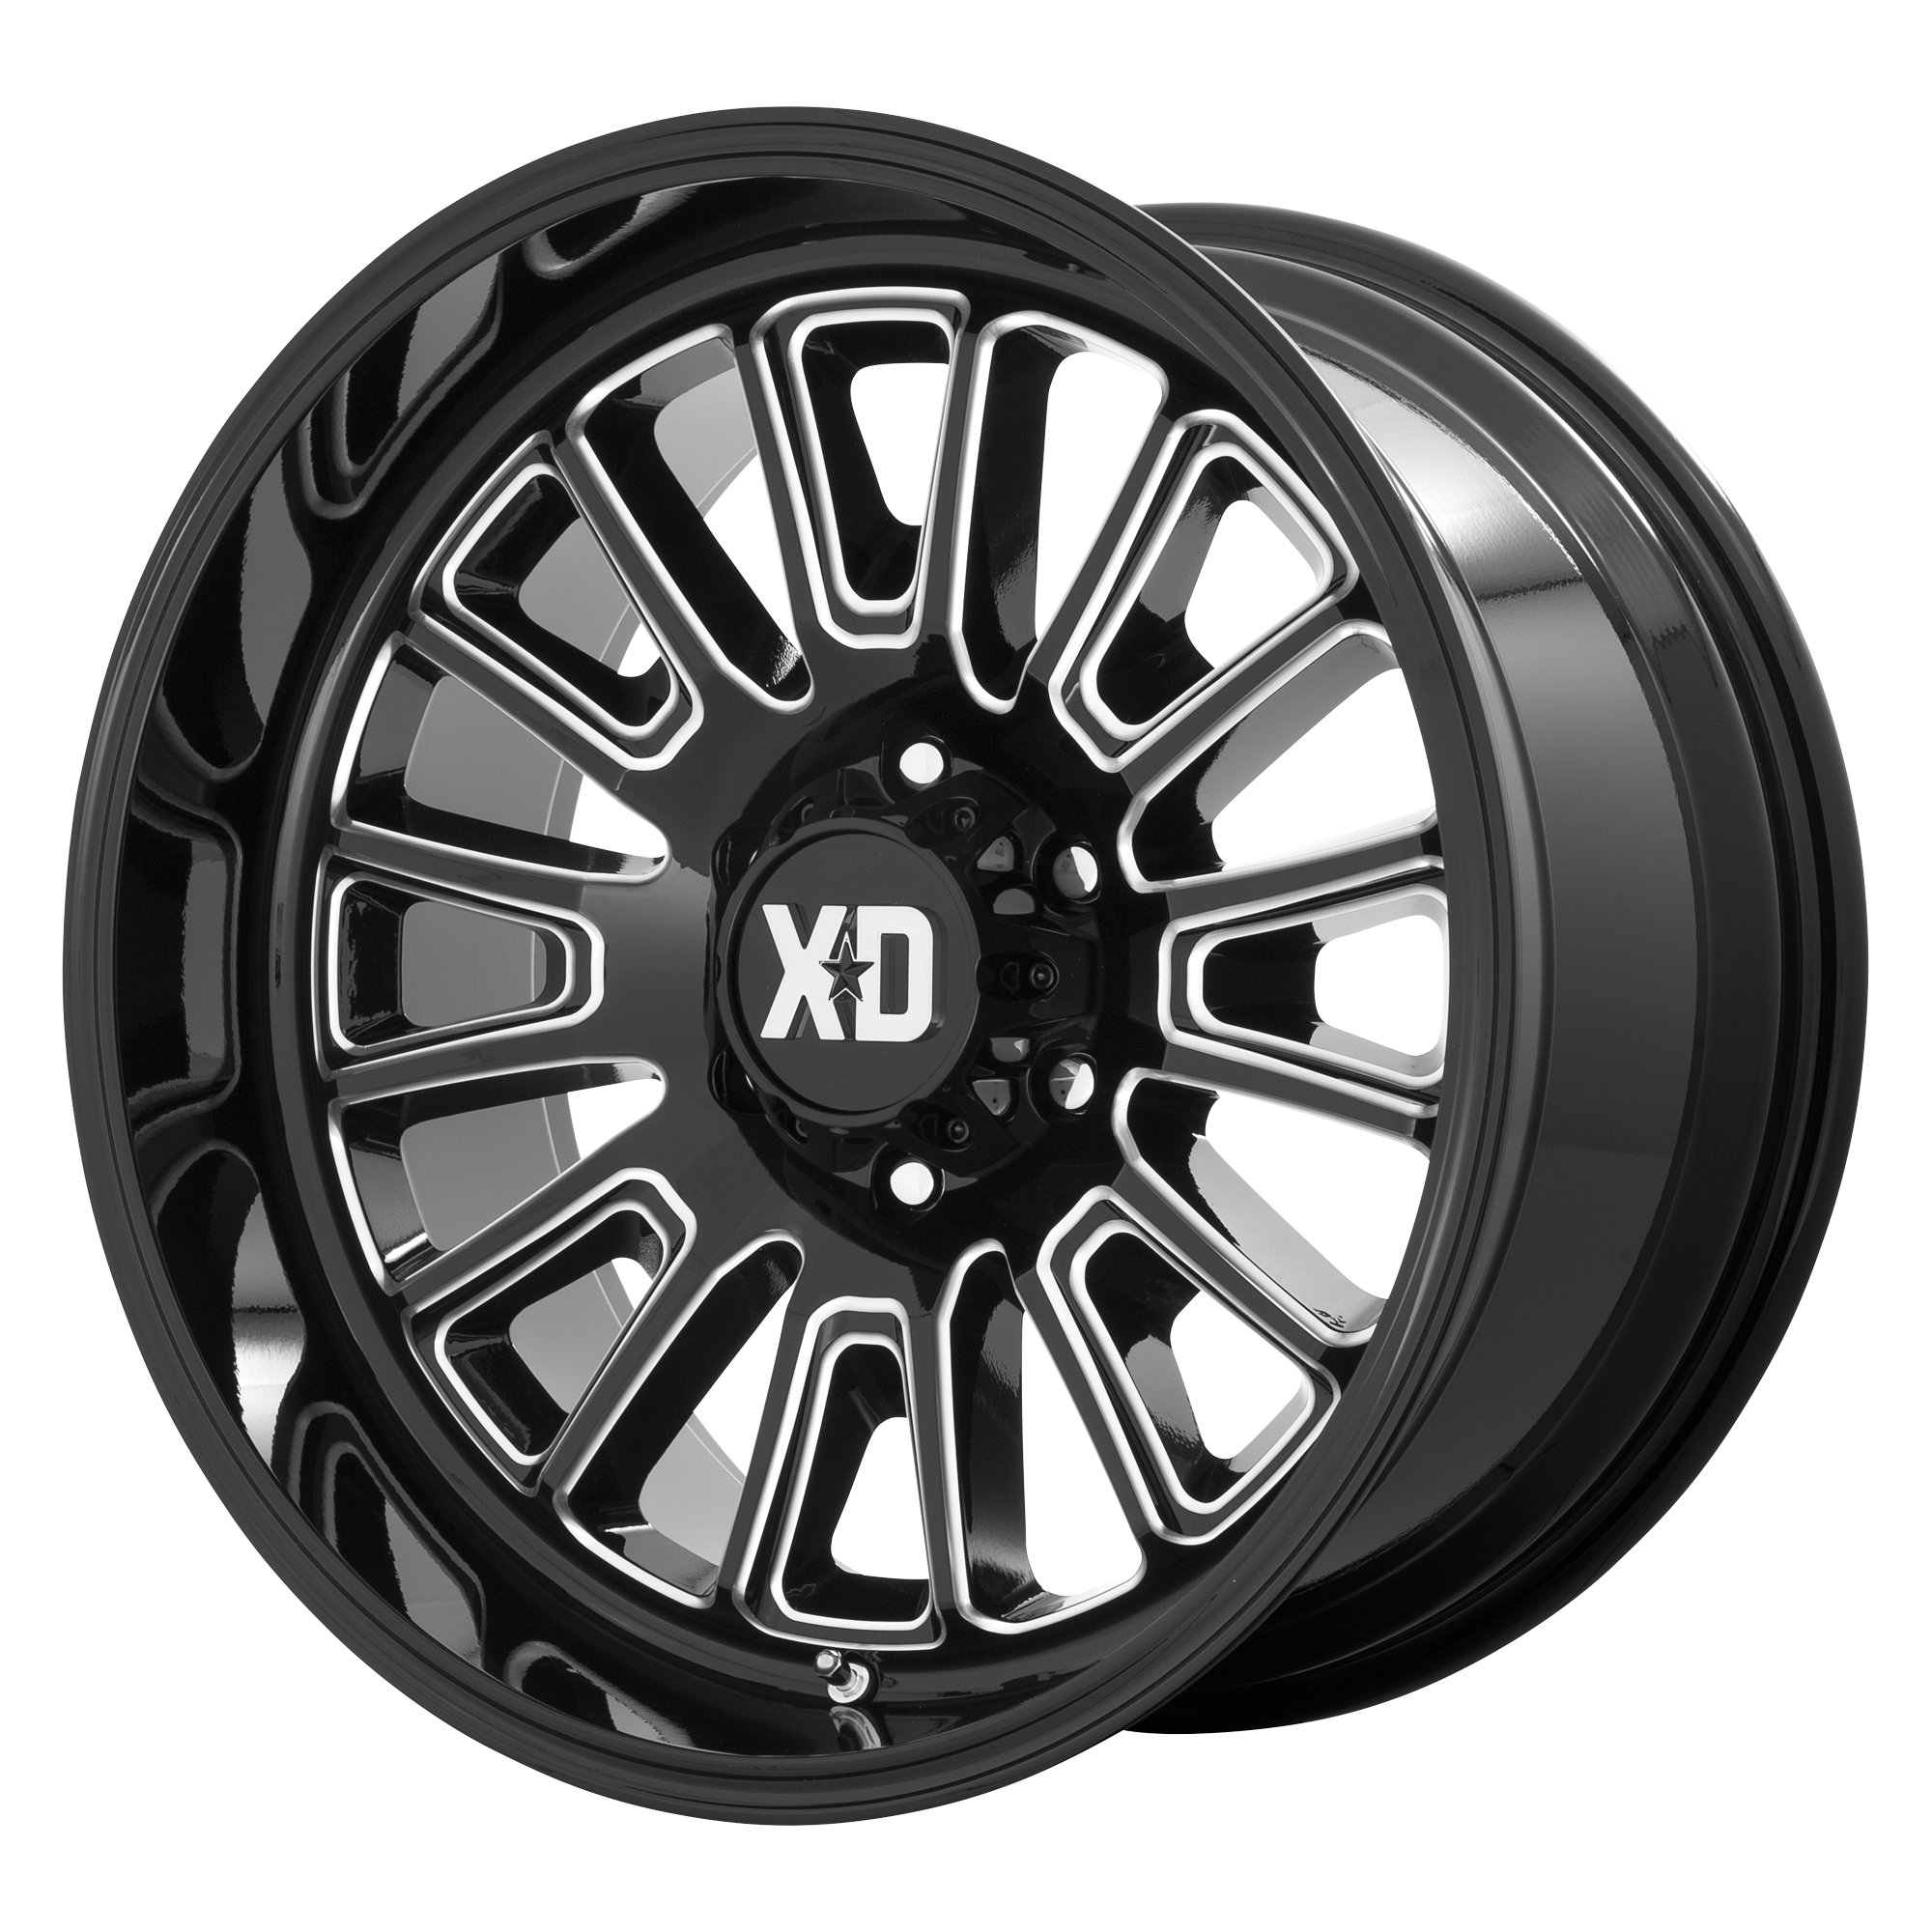 XD 24"x12" Non-Chrome Gloss Black Milled Custom Wheel ARSWCWXD86424268344N